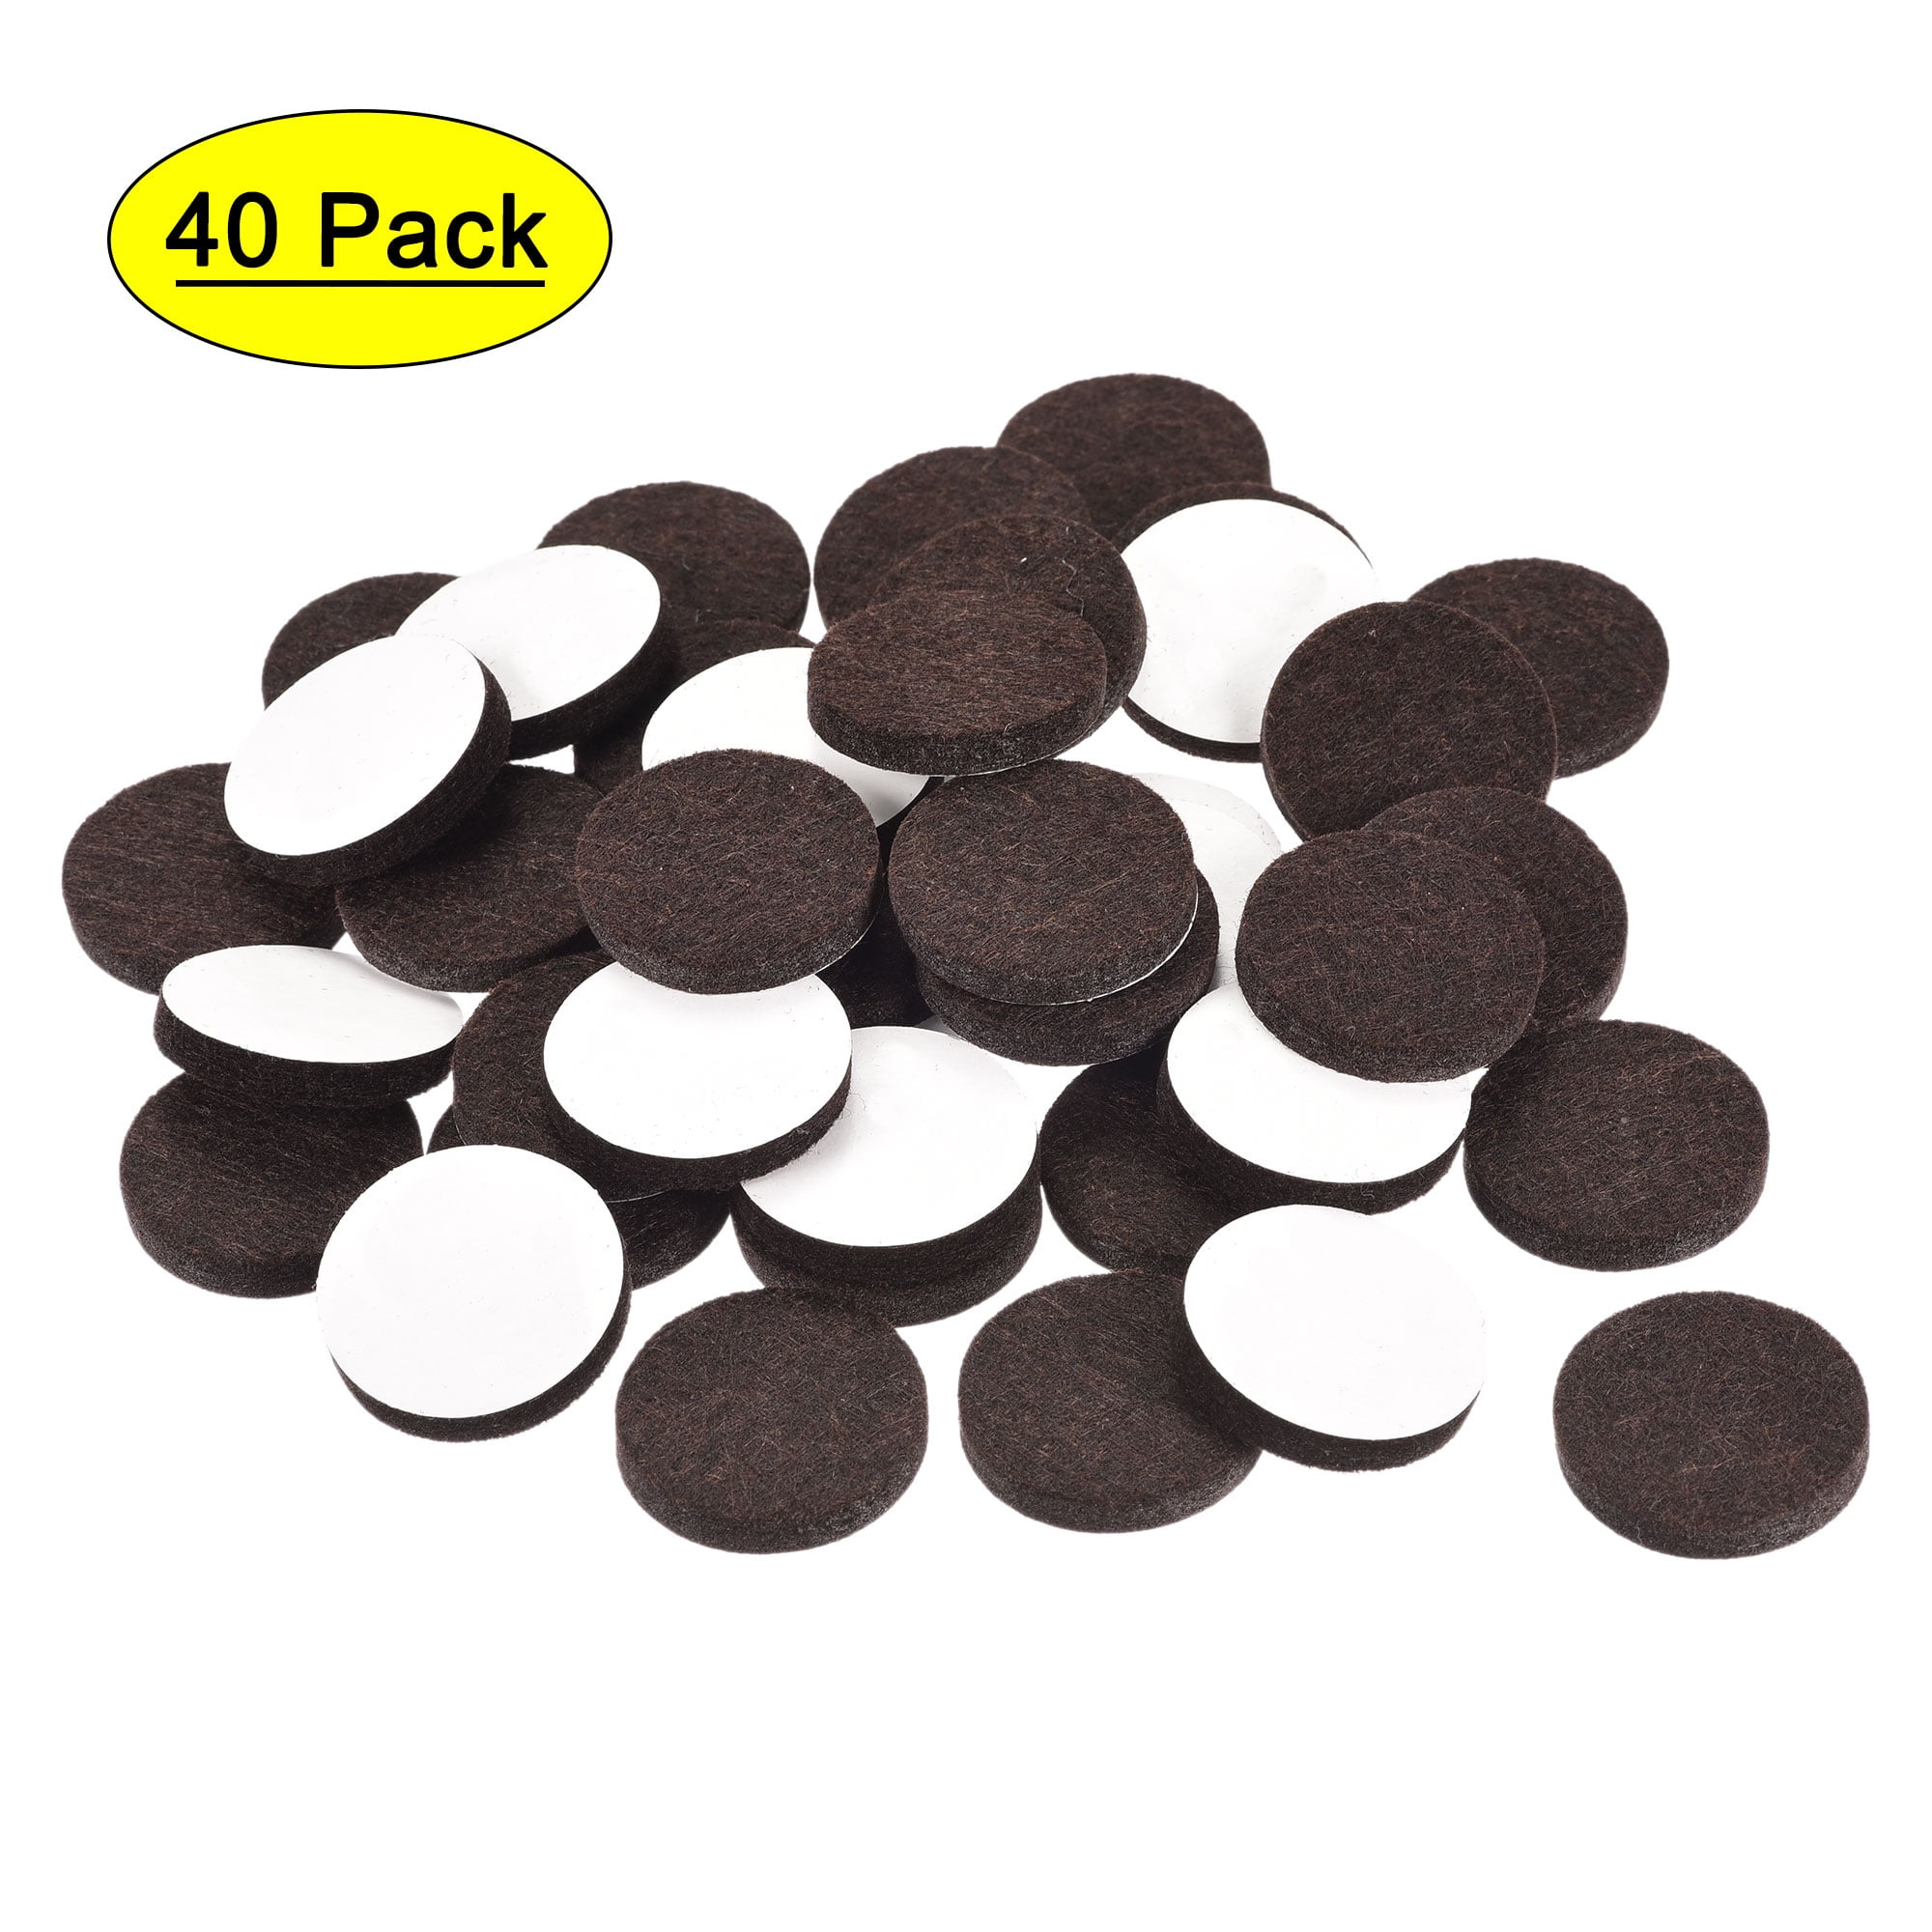 H/W FELT PADS adhesive 19mm diameter pack of 20 